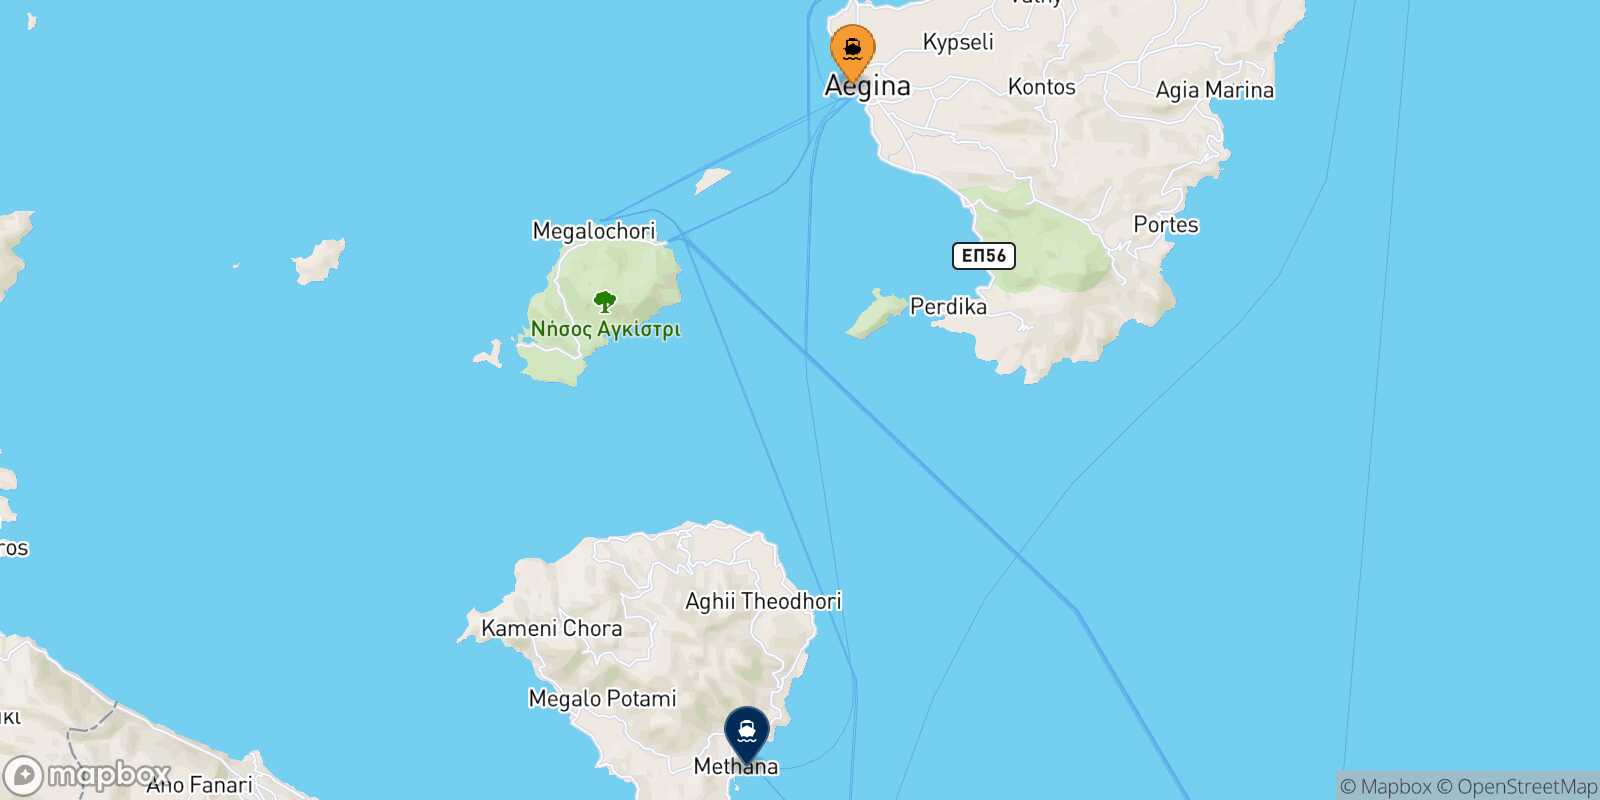 Aegina Methana route map